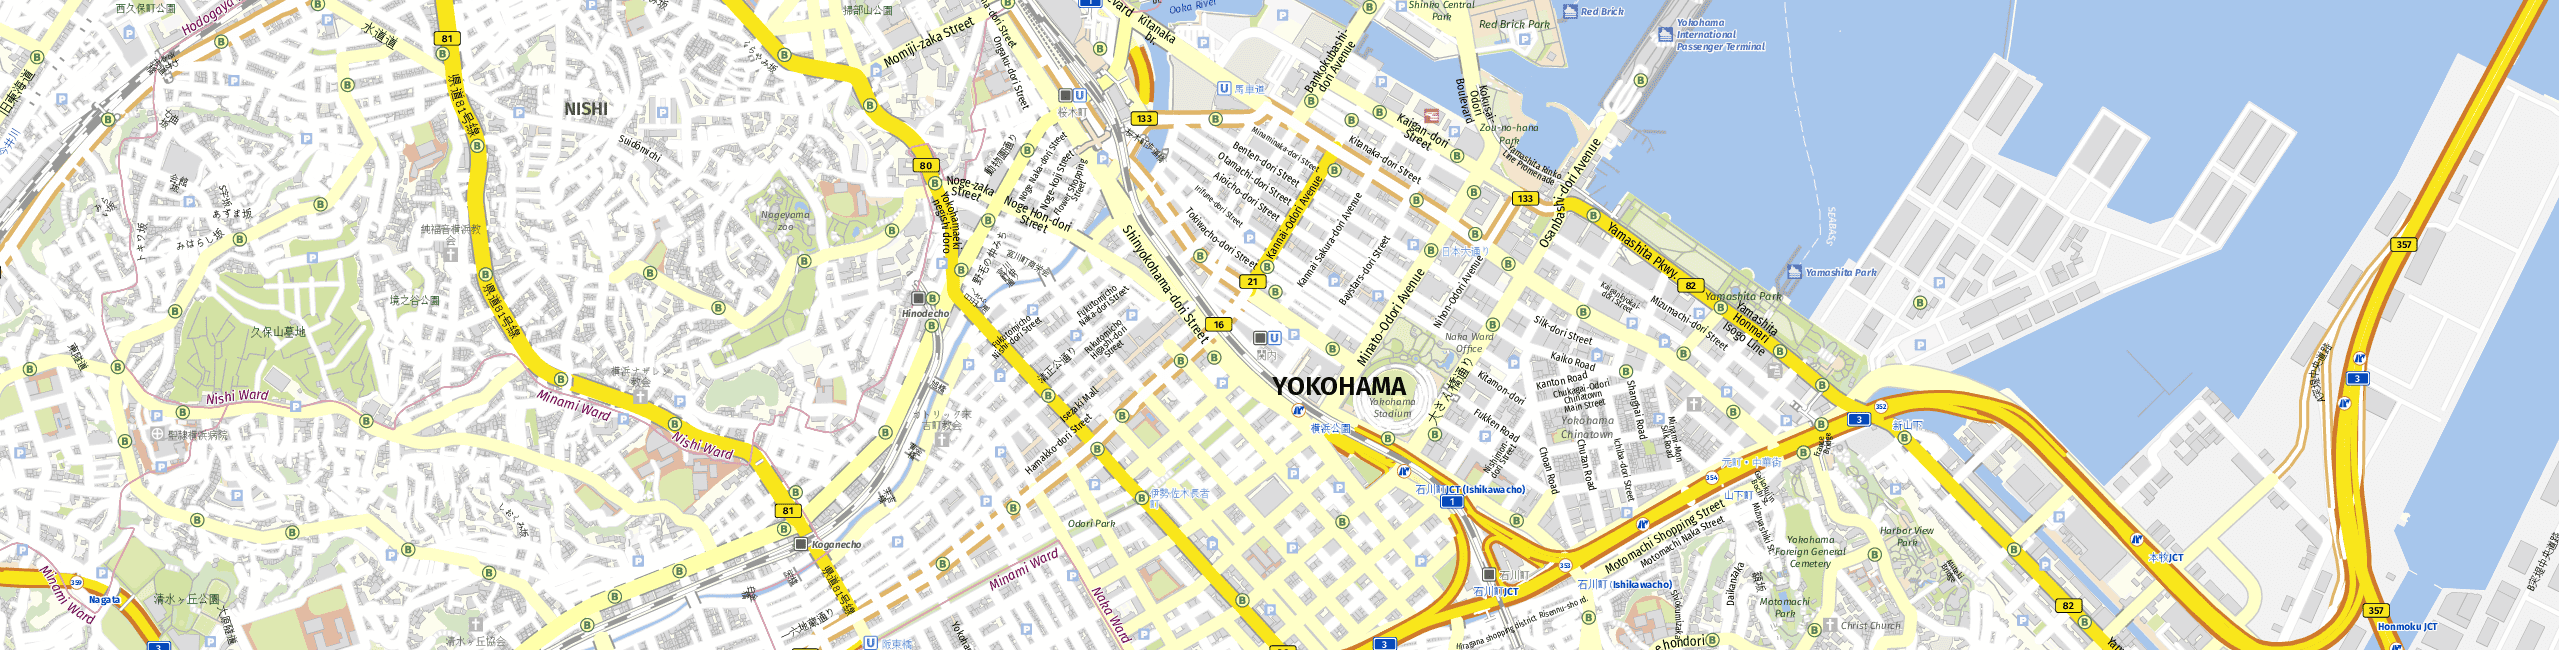 Stadtplan Yokohama zum Downloaden.